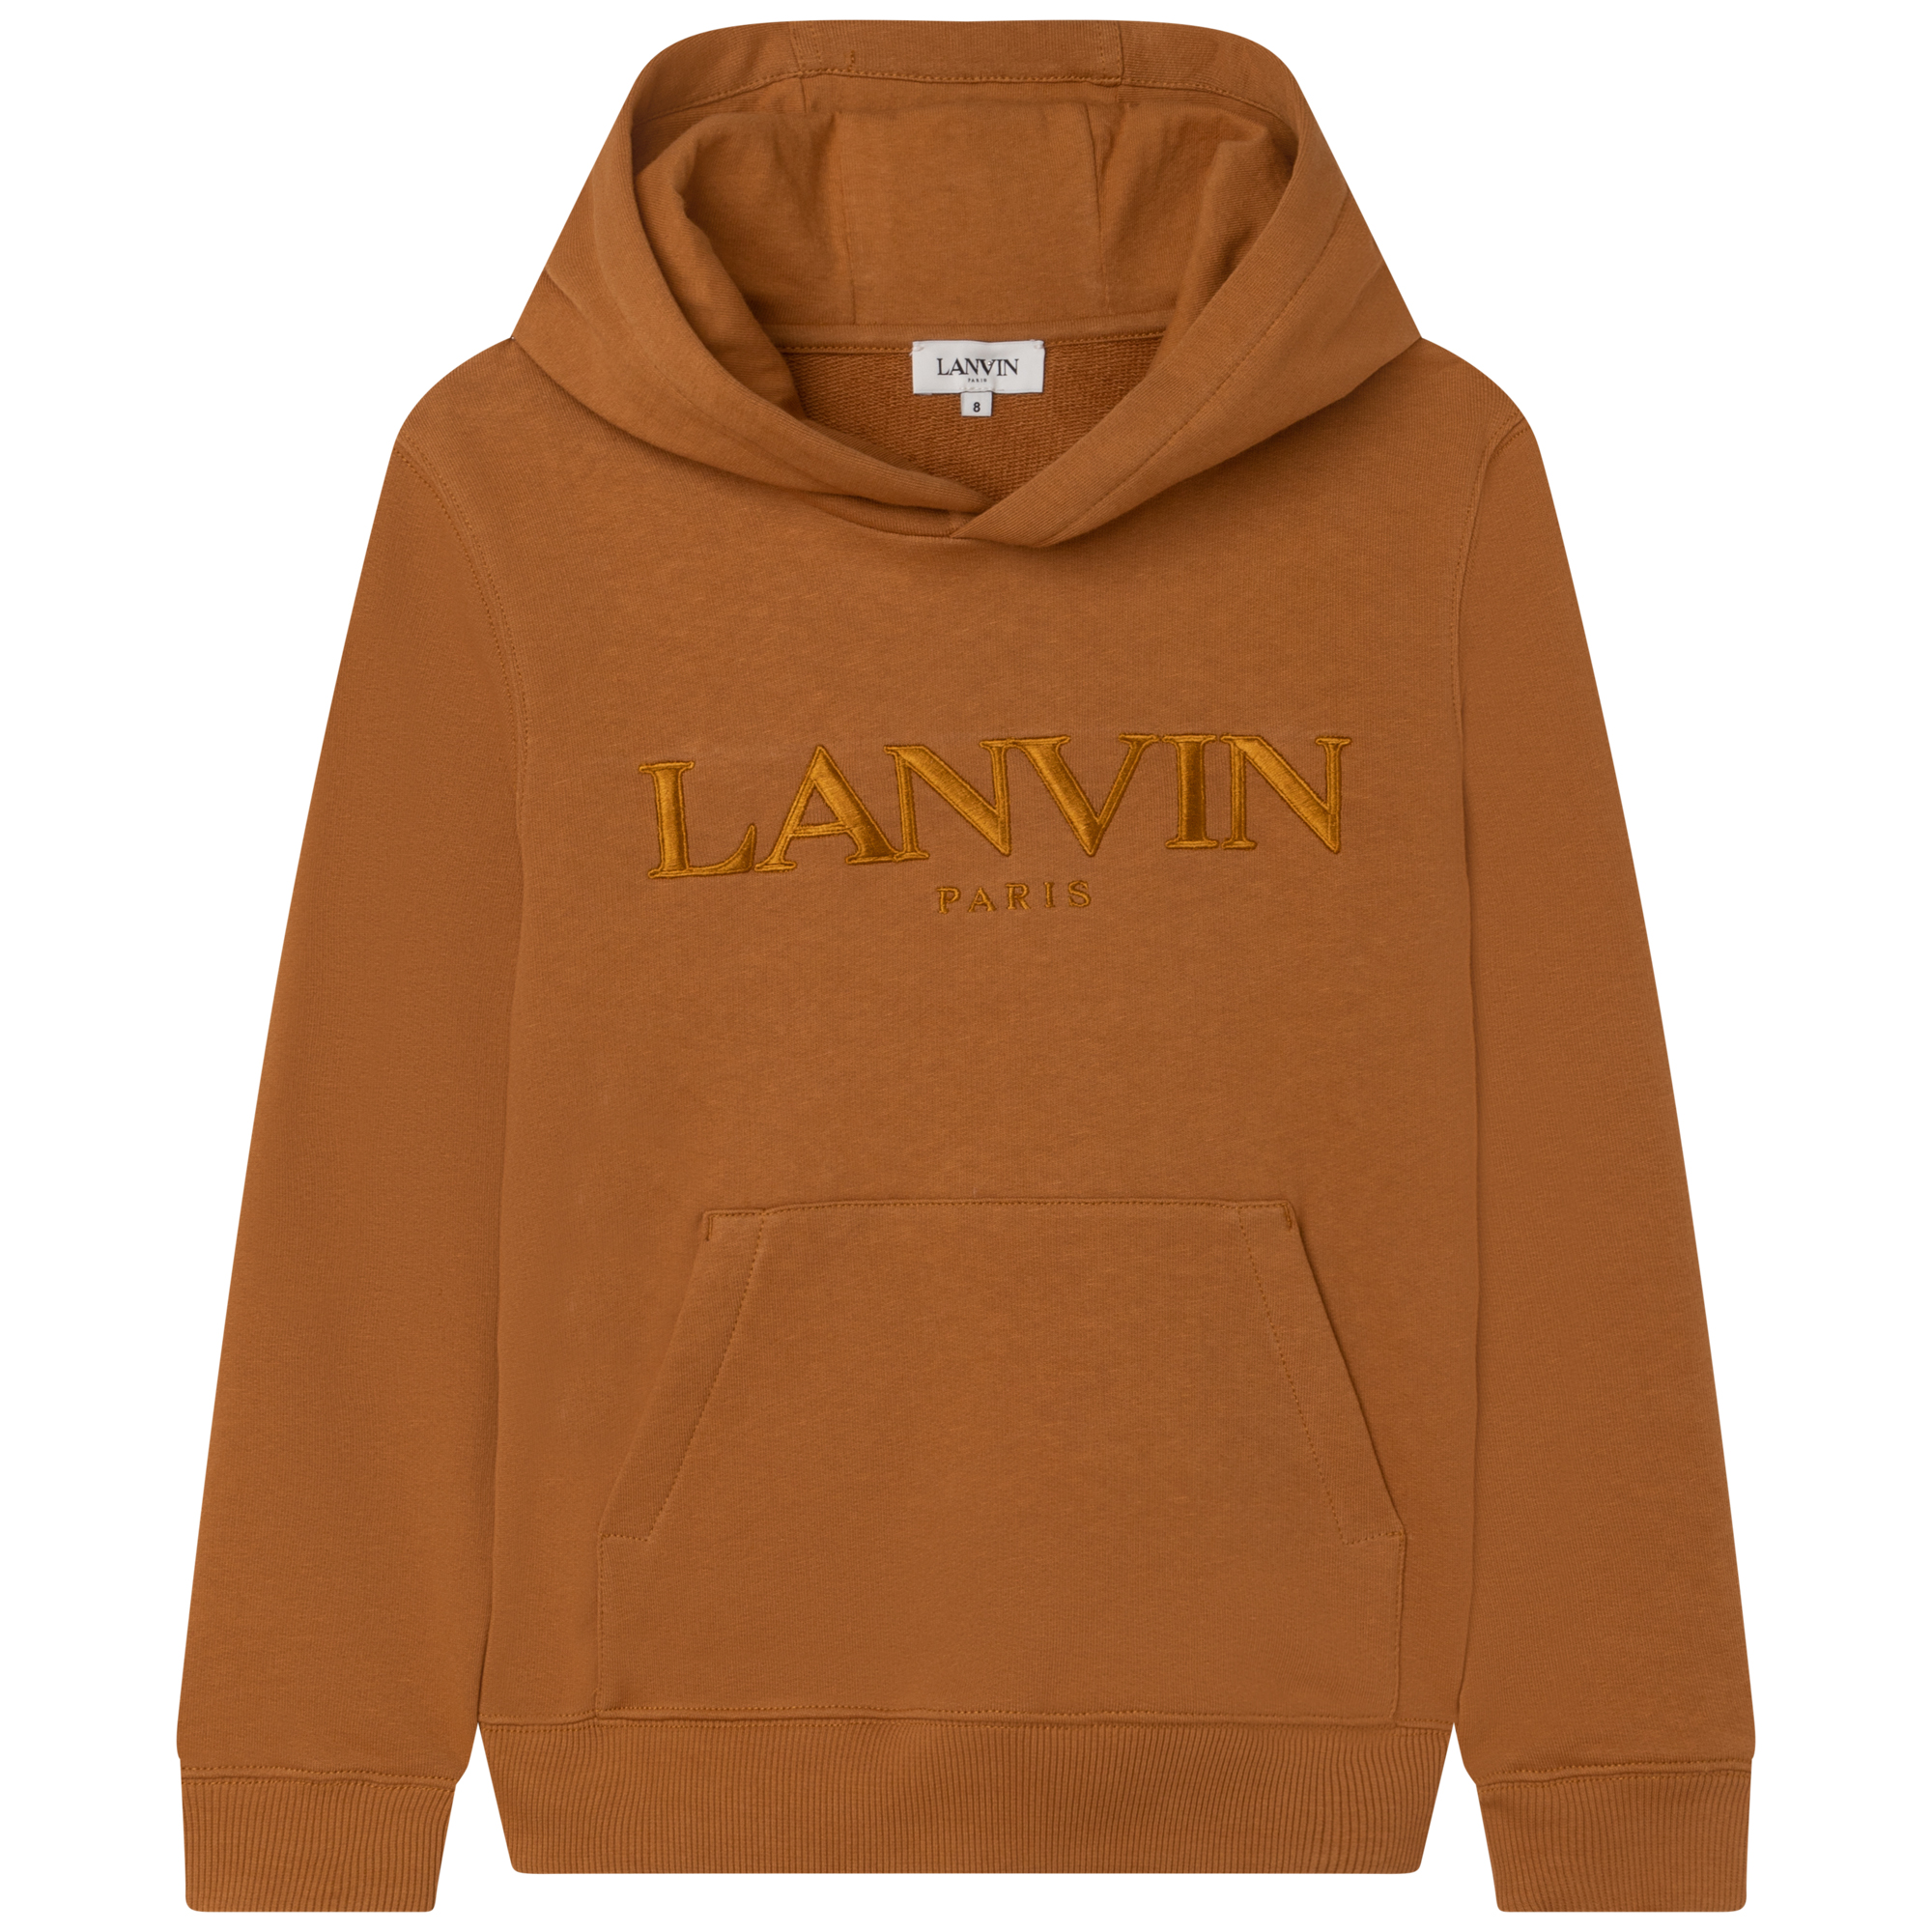 Hooded sweatshirt LANVIN for BOY